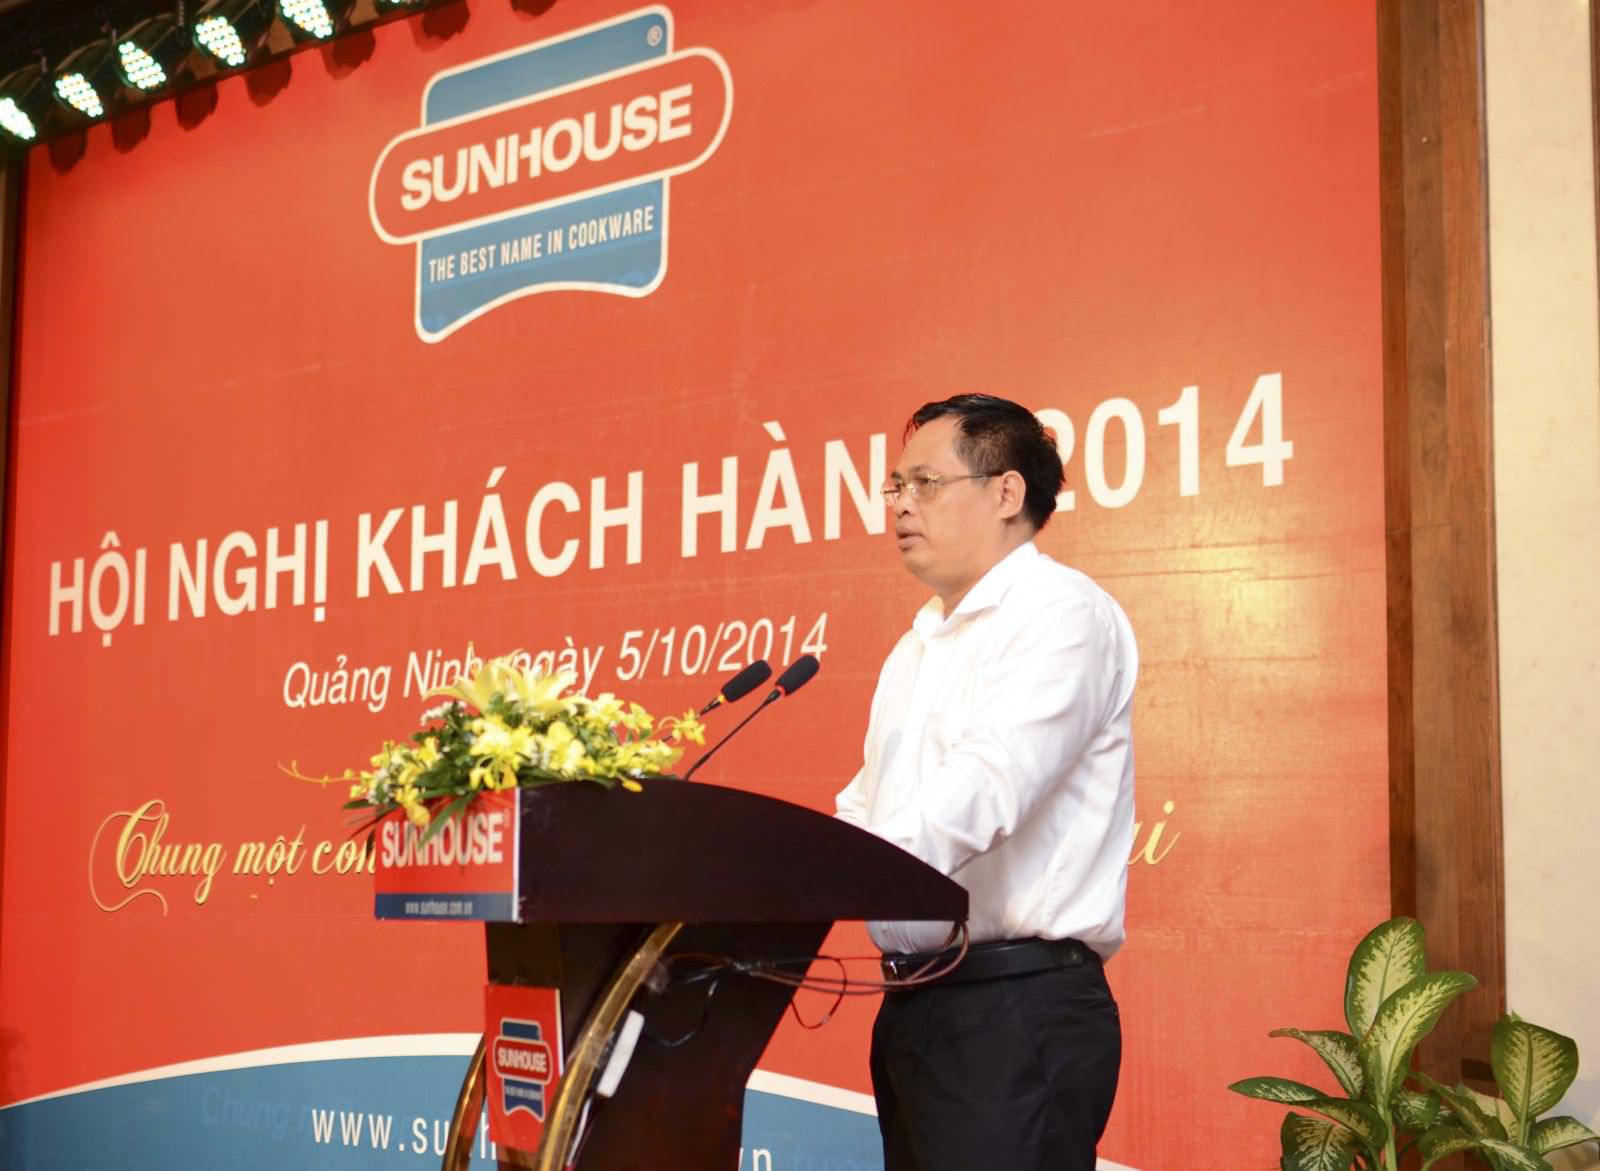 Hội nghị khách hàng Sunhouse tại Quảng Ninh: Cam kết để thành công 3